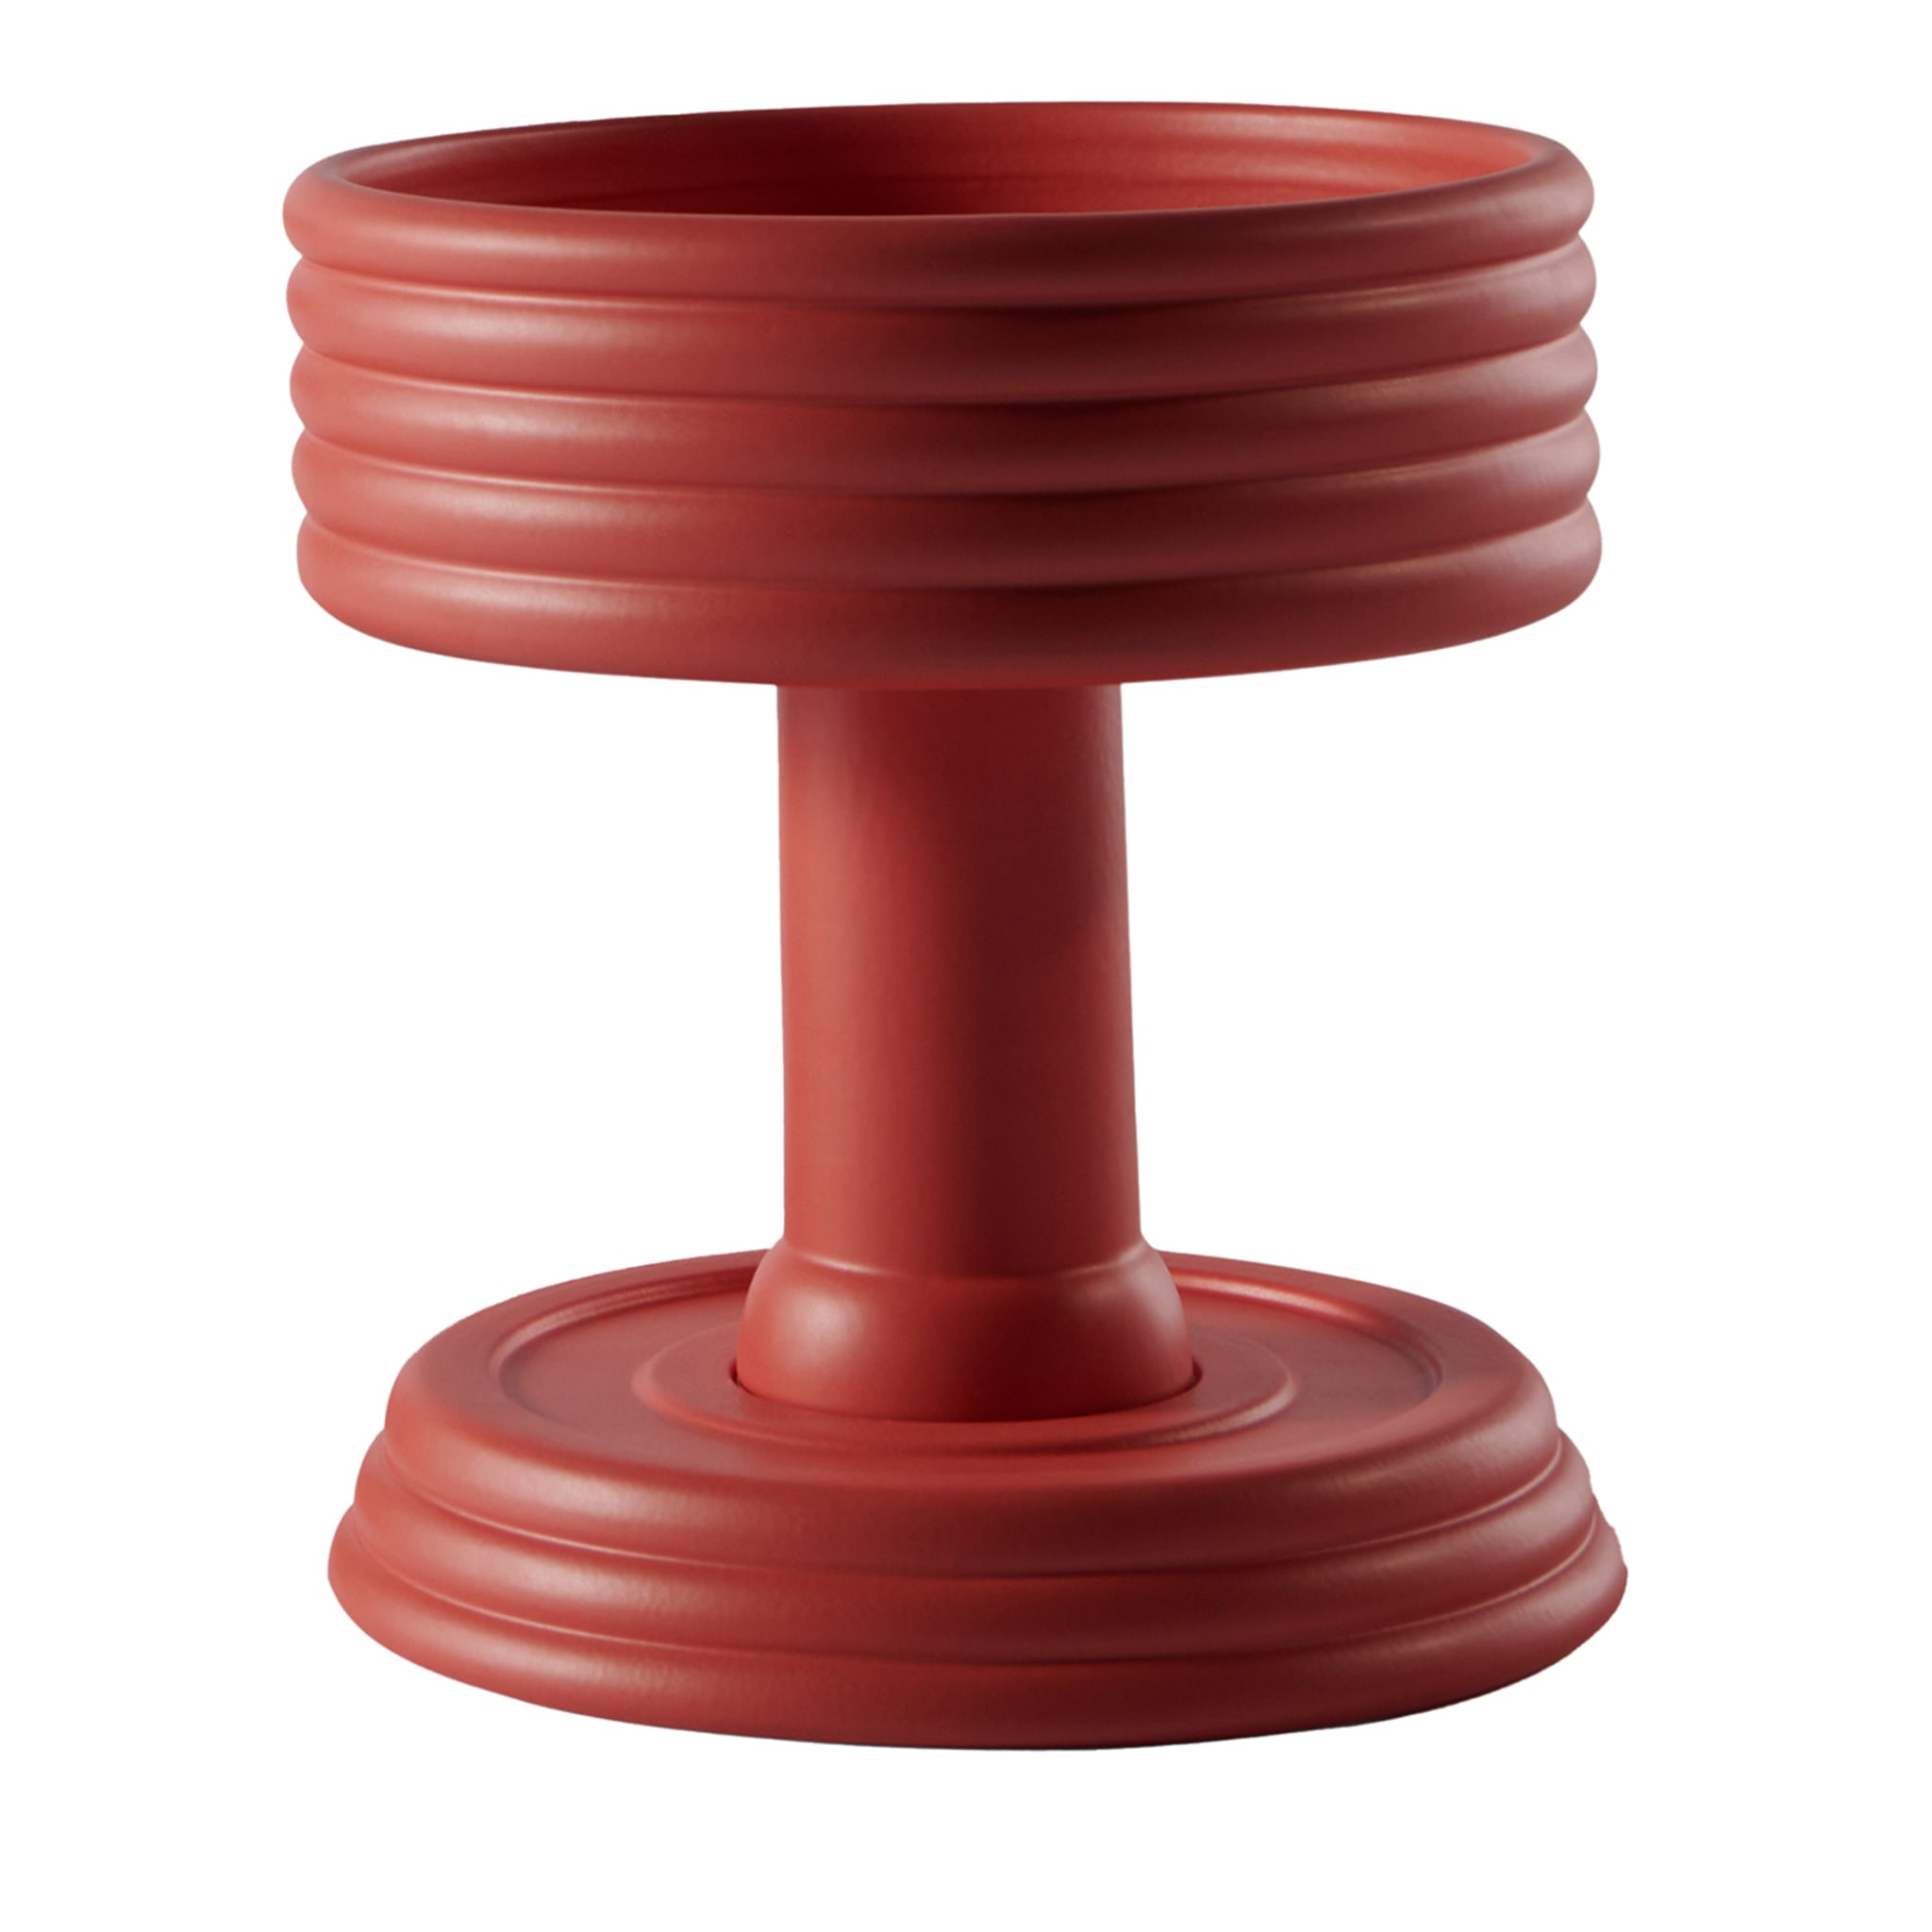 Triplex Un centrotavola in ceramica rossa in edizione limitata di Andrea Branciforti - Vista principale